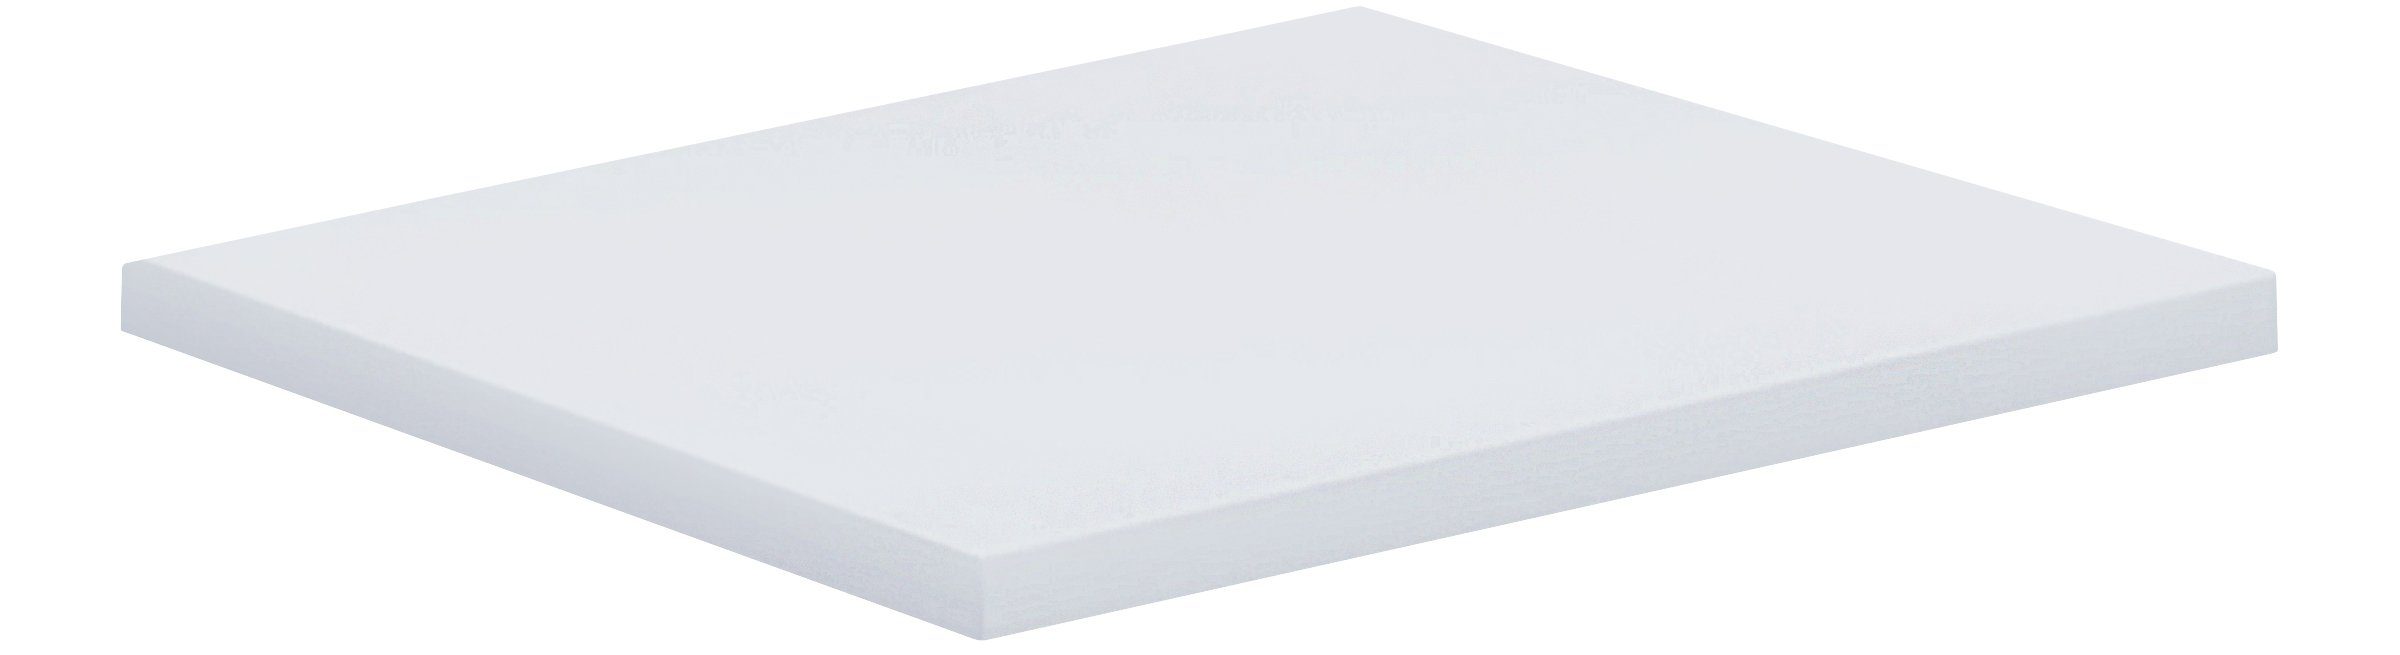 VCM Schreibtisch Eckplatte Schreibtisch Lona 80x80 Weiß